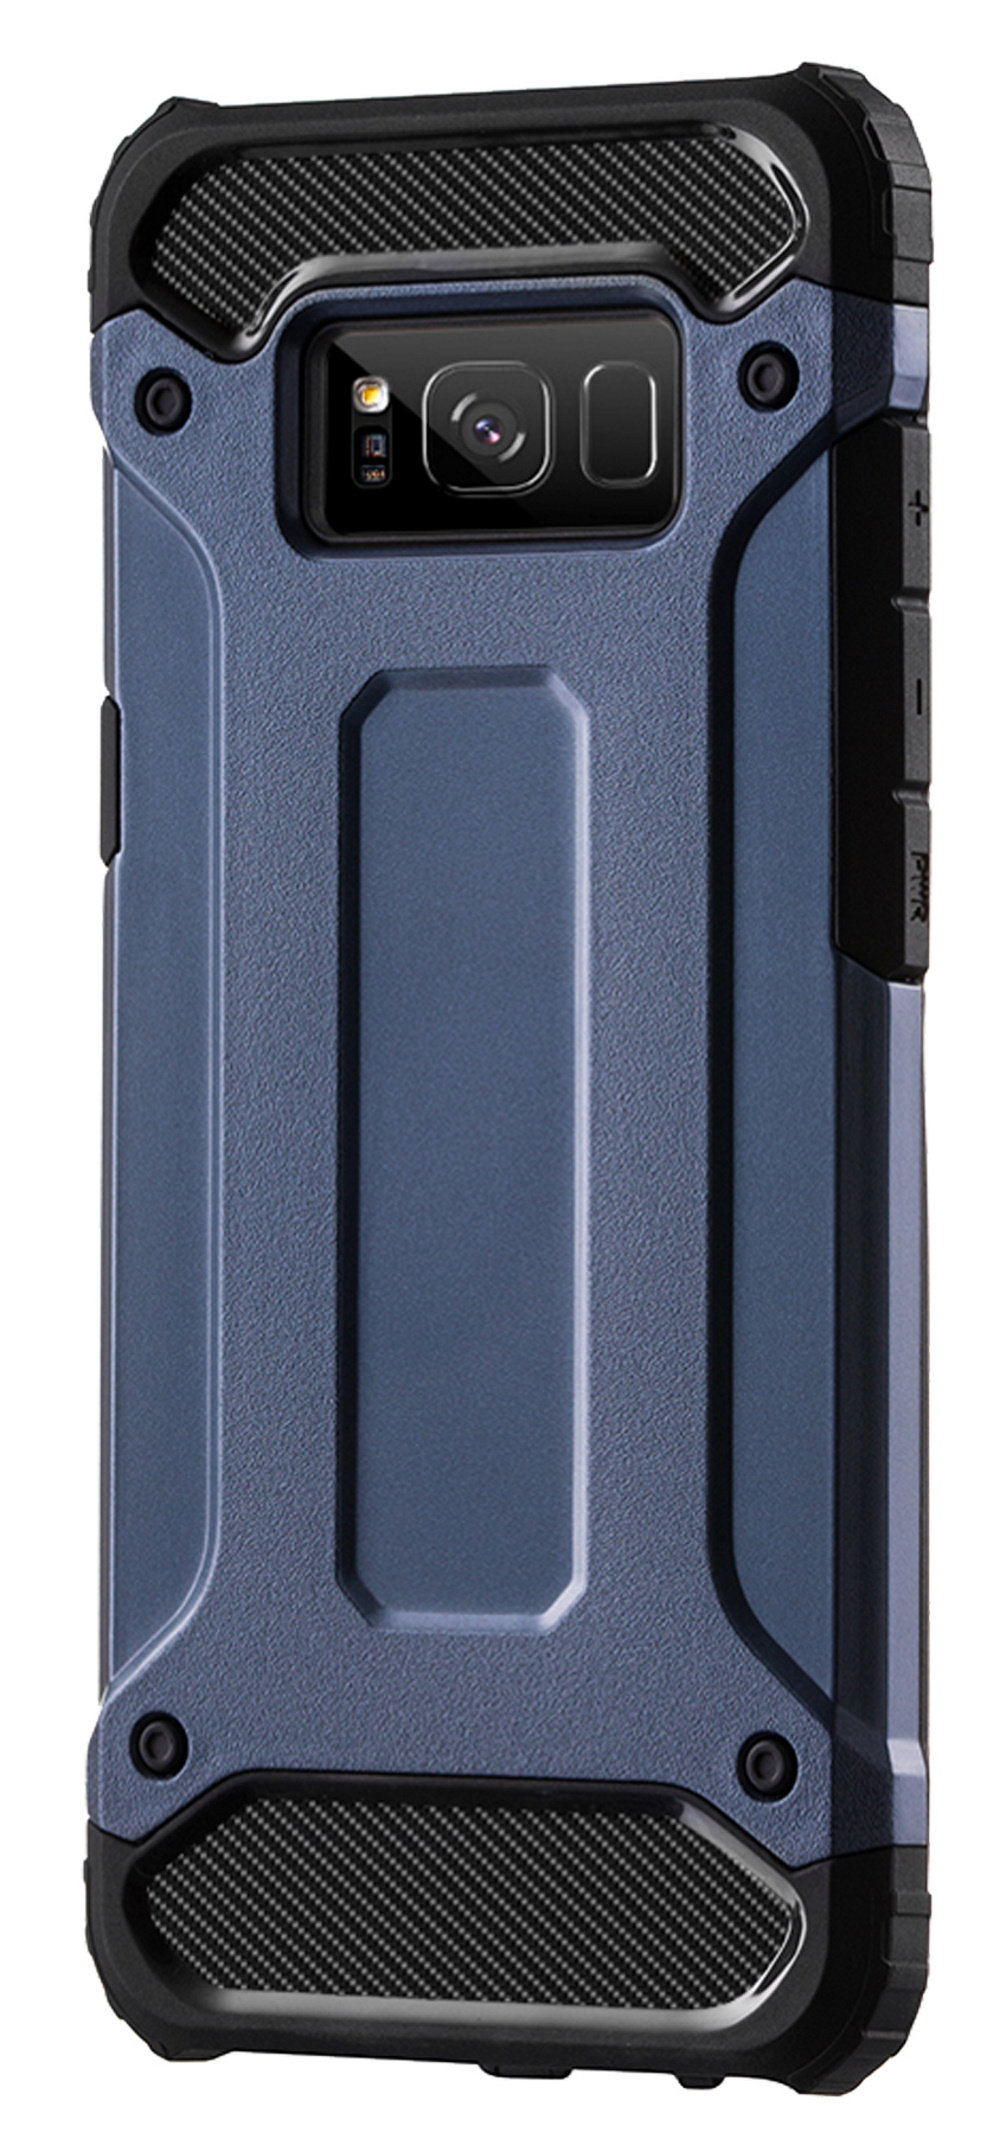 Galaxy Armor Samsung, A71, COFI Hybrid Blau Case, Bumper,